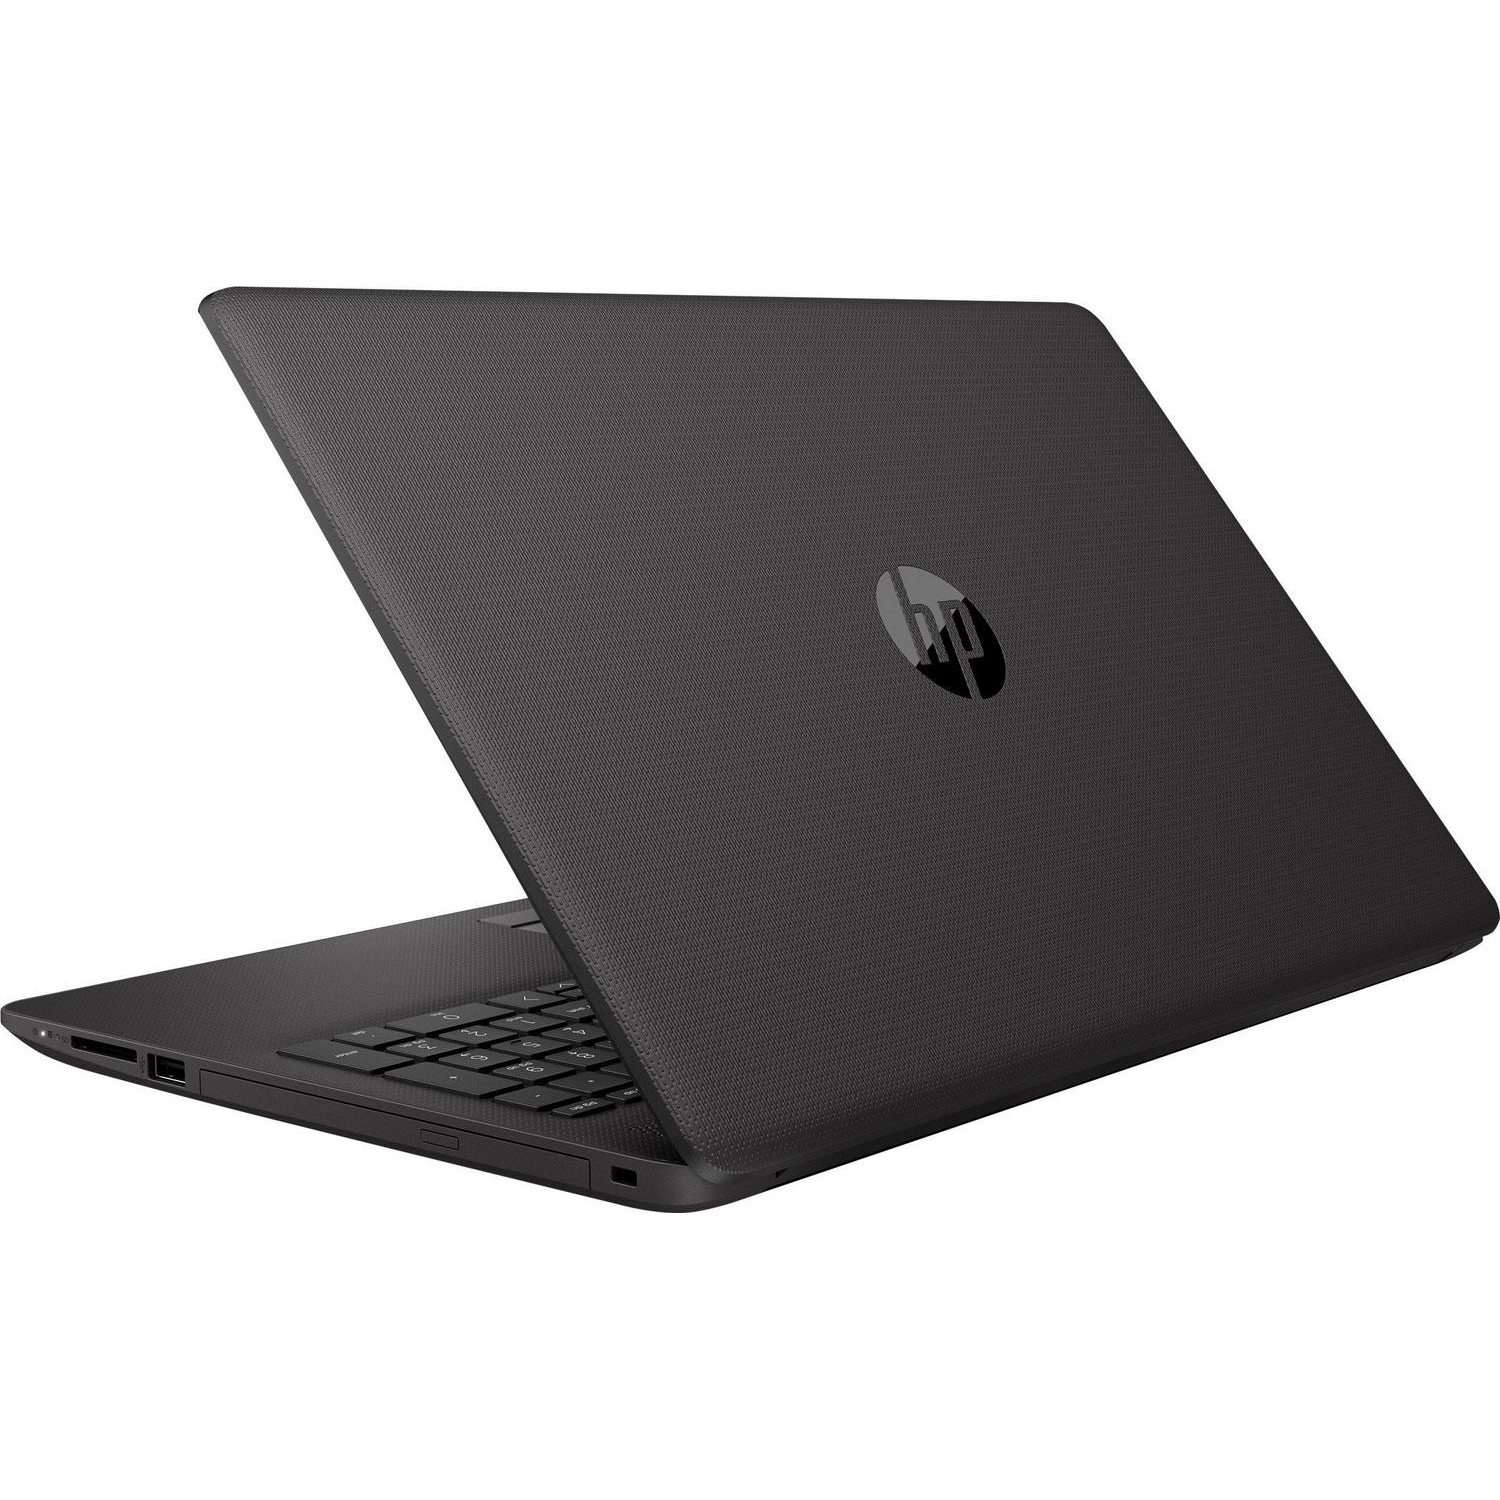 Anuncio toda la vida Dónde HP 250 G7 Notebook Laptop,15.6, i5 8th Gen, UHD 620, 4 GB RAM, 500 GB HDD  en Panamá - Mercologo